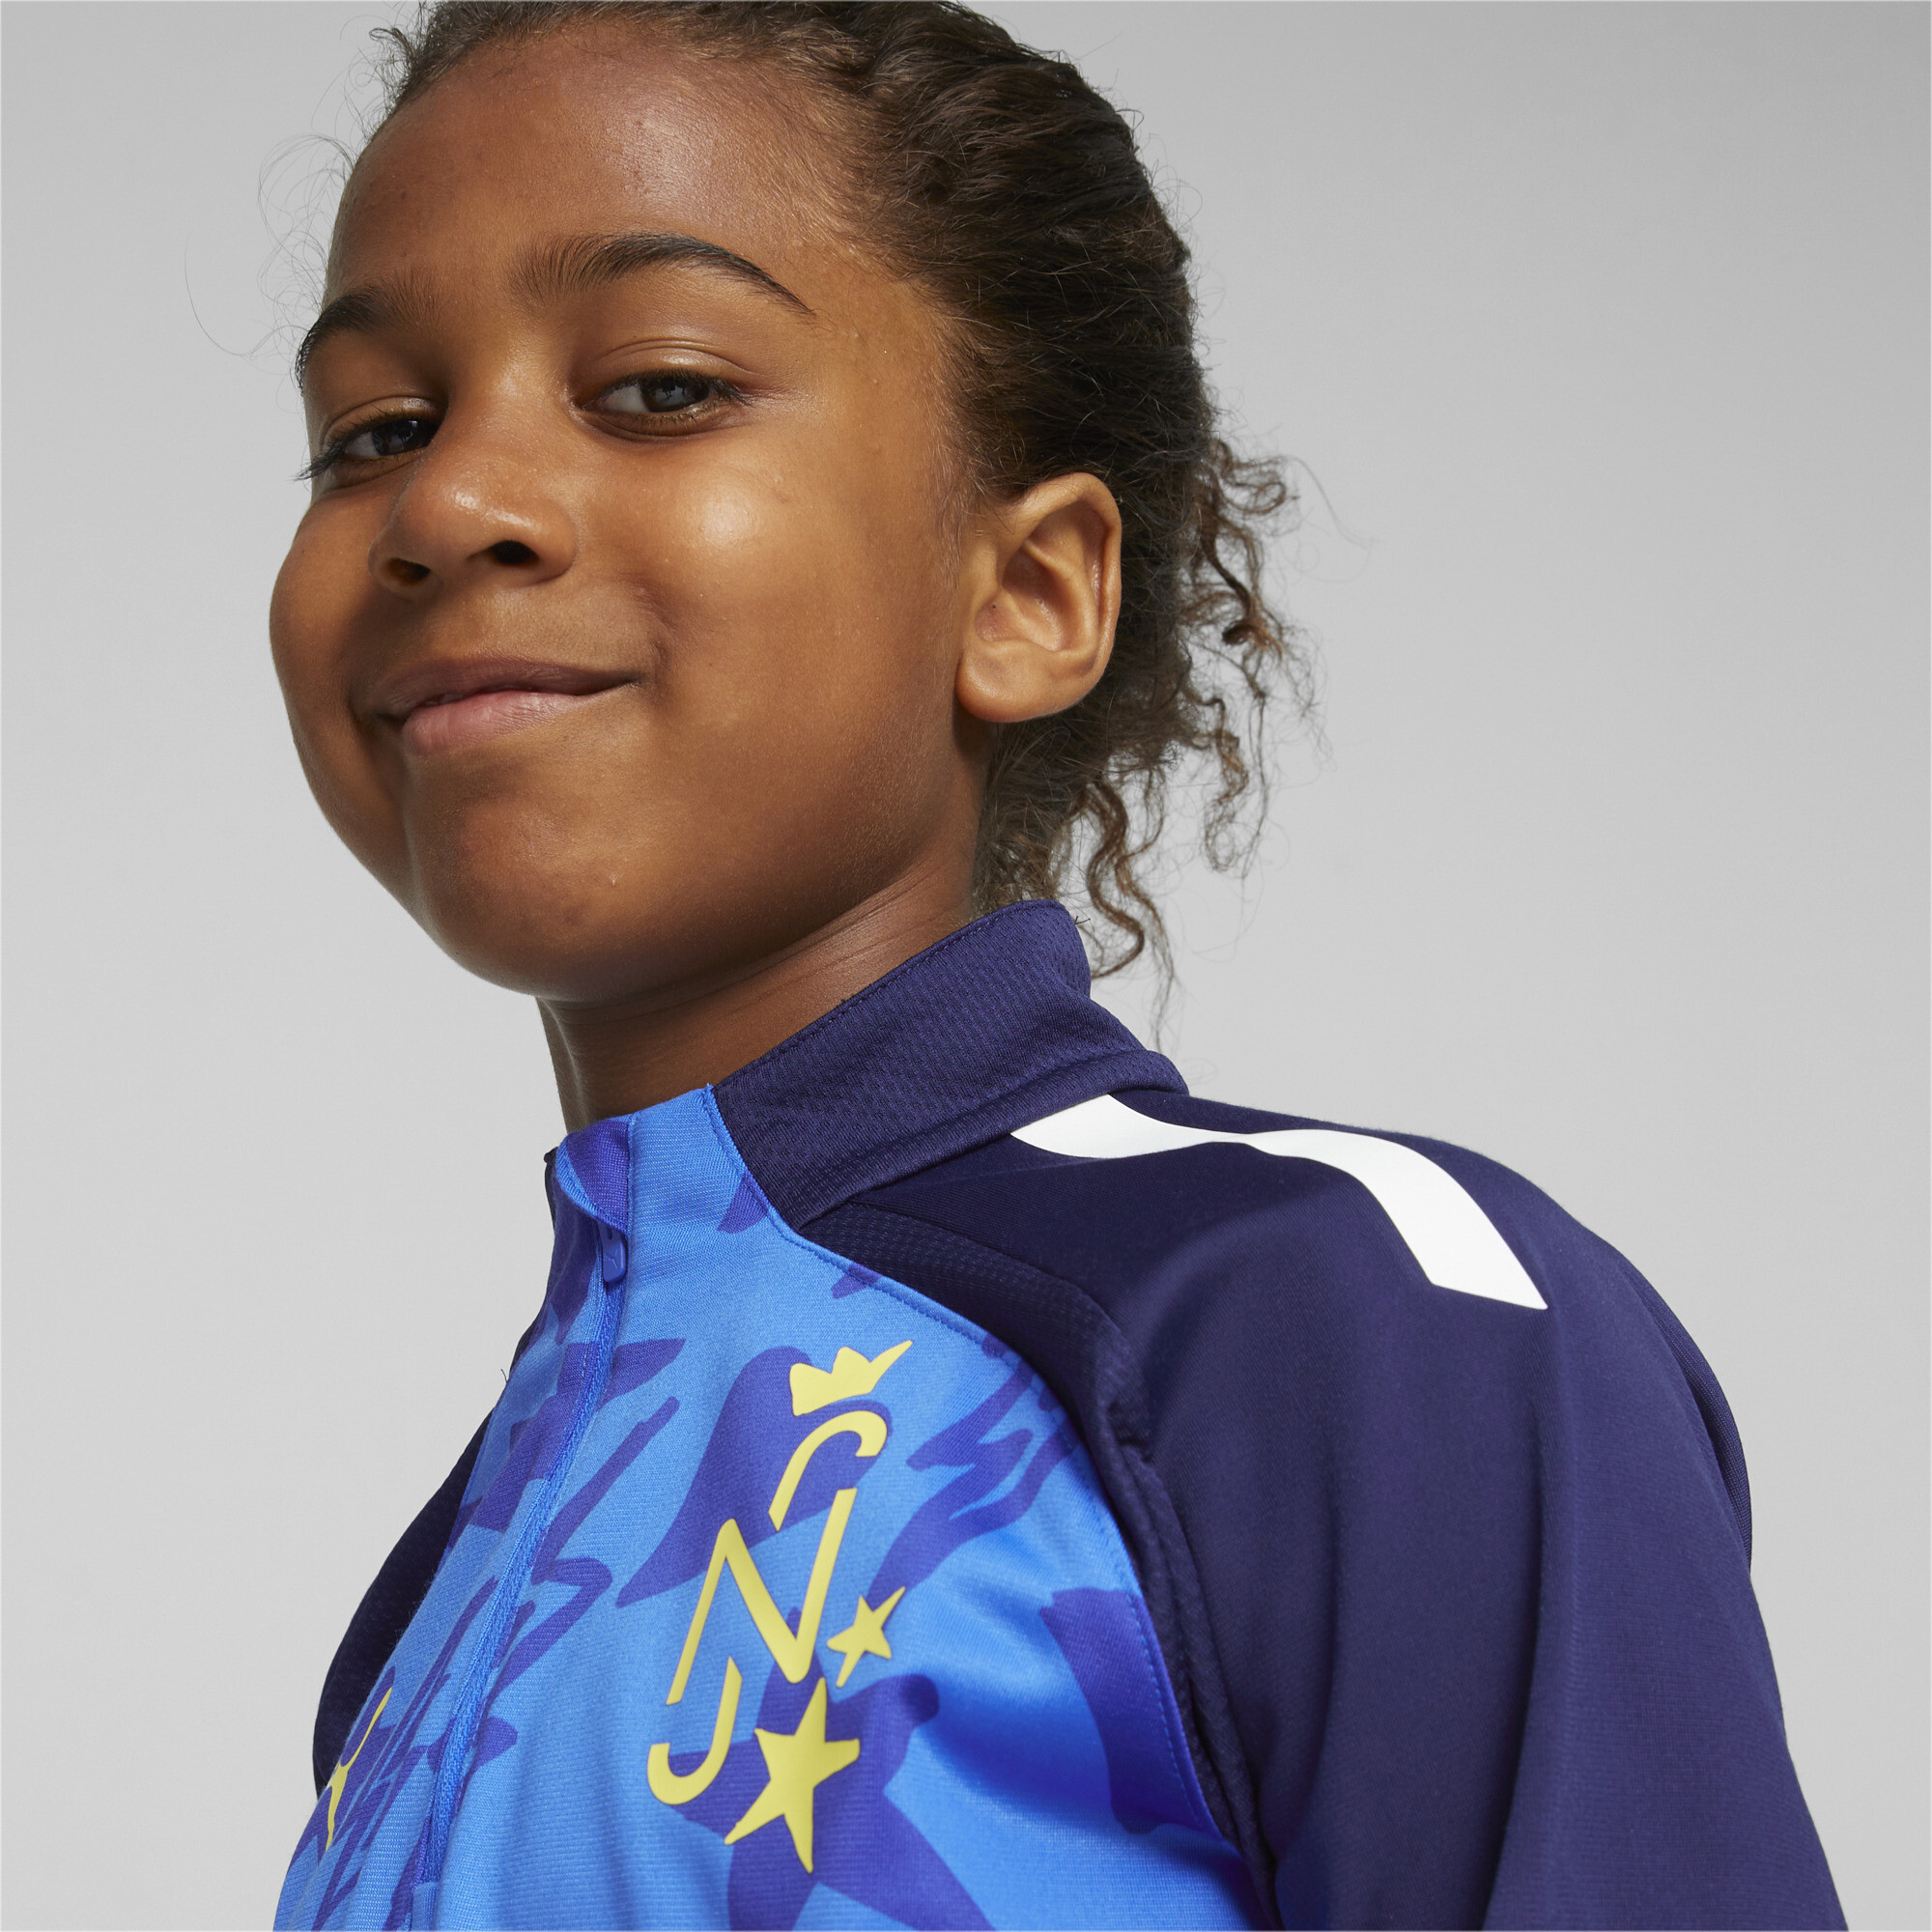 PUMA Neymar Jr Football Track Jacket In Blue, Size 5-6 Youth